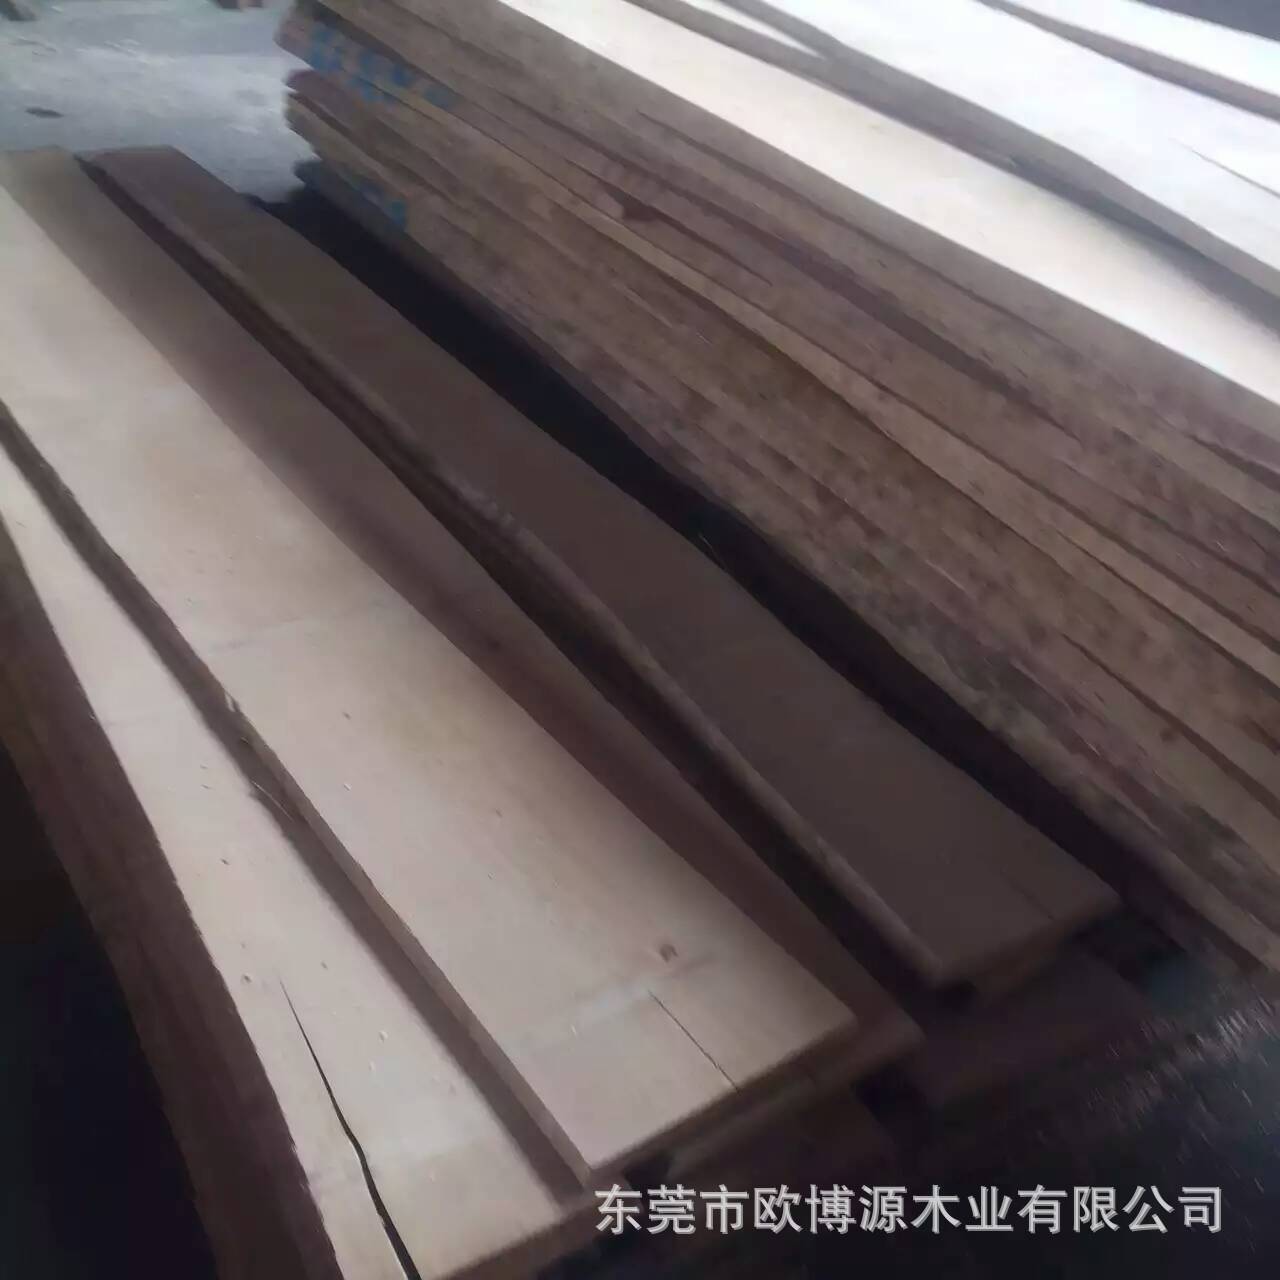 热销欧洲进口榉木A级板材  多规格 全实木板材 FSC认证 家居地板